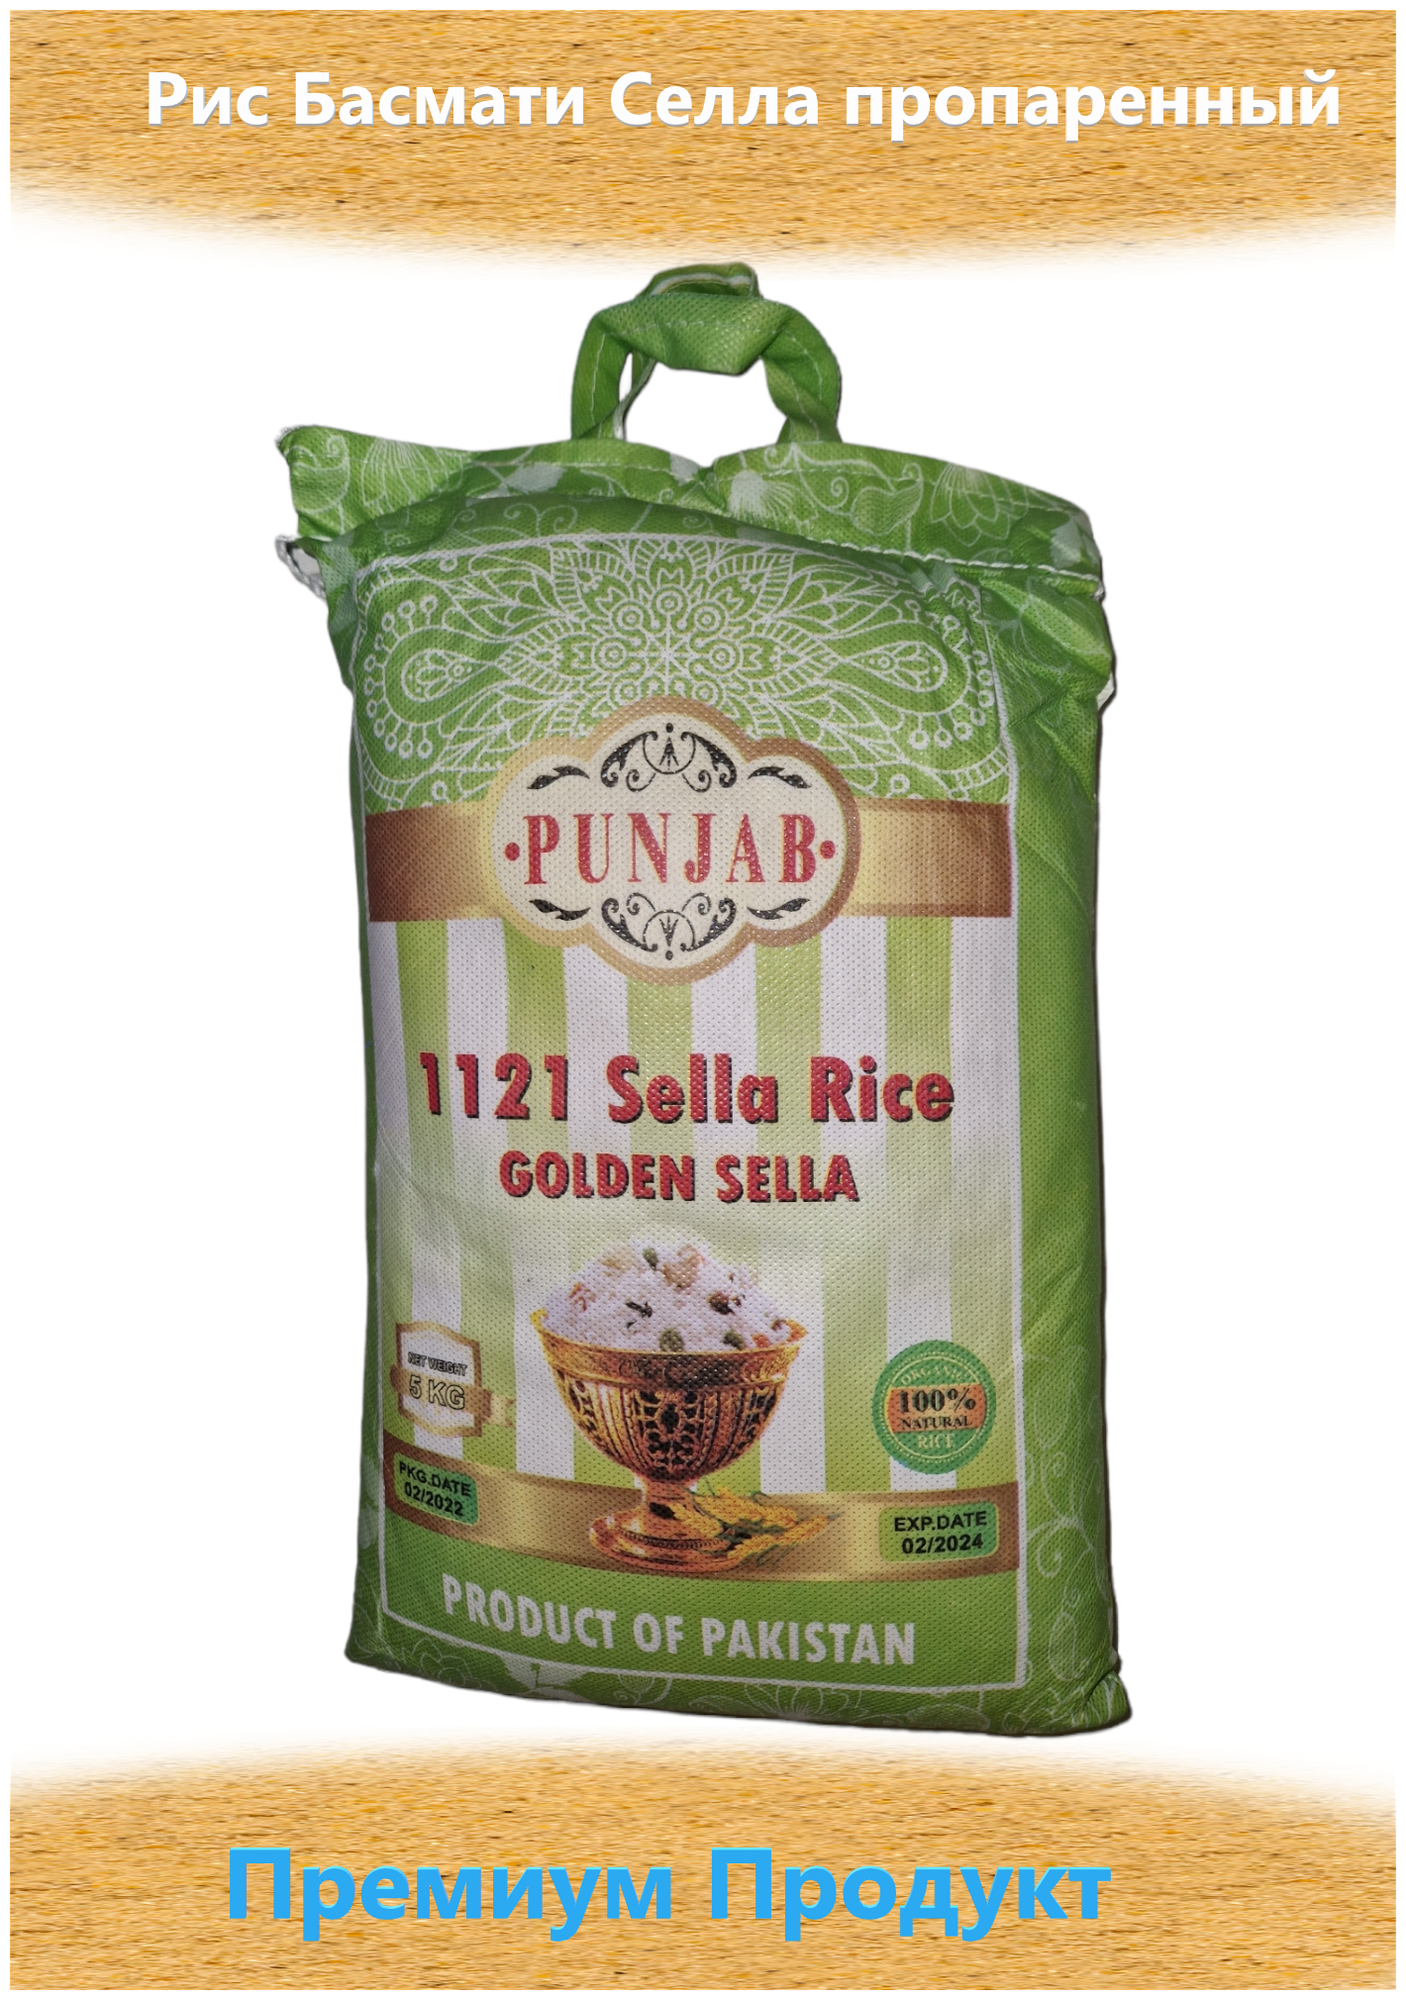 Пакистанский Рис Басмати Селла пропаренный, 5 кг.